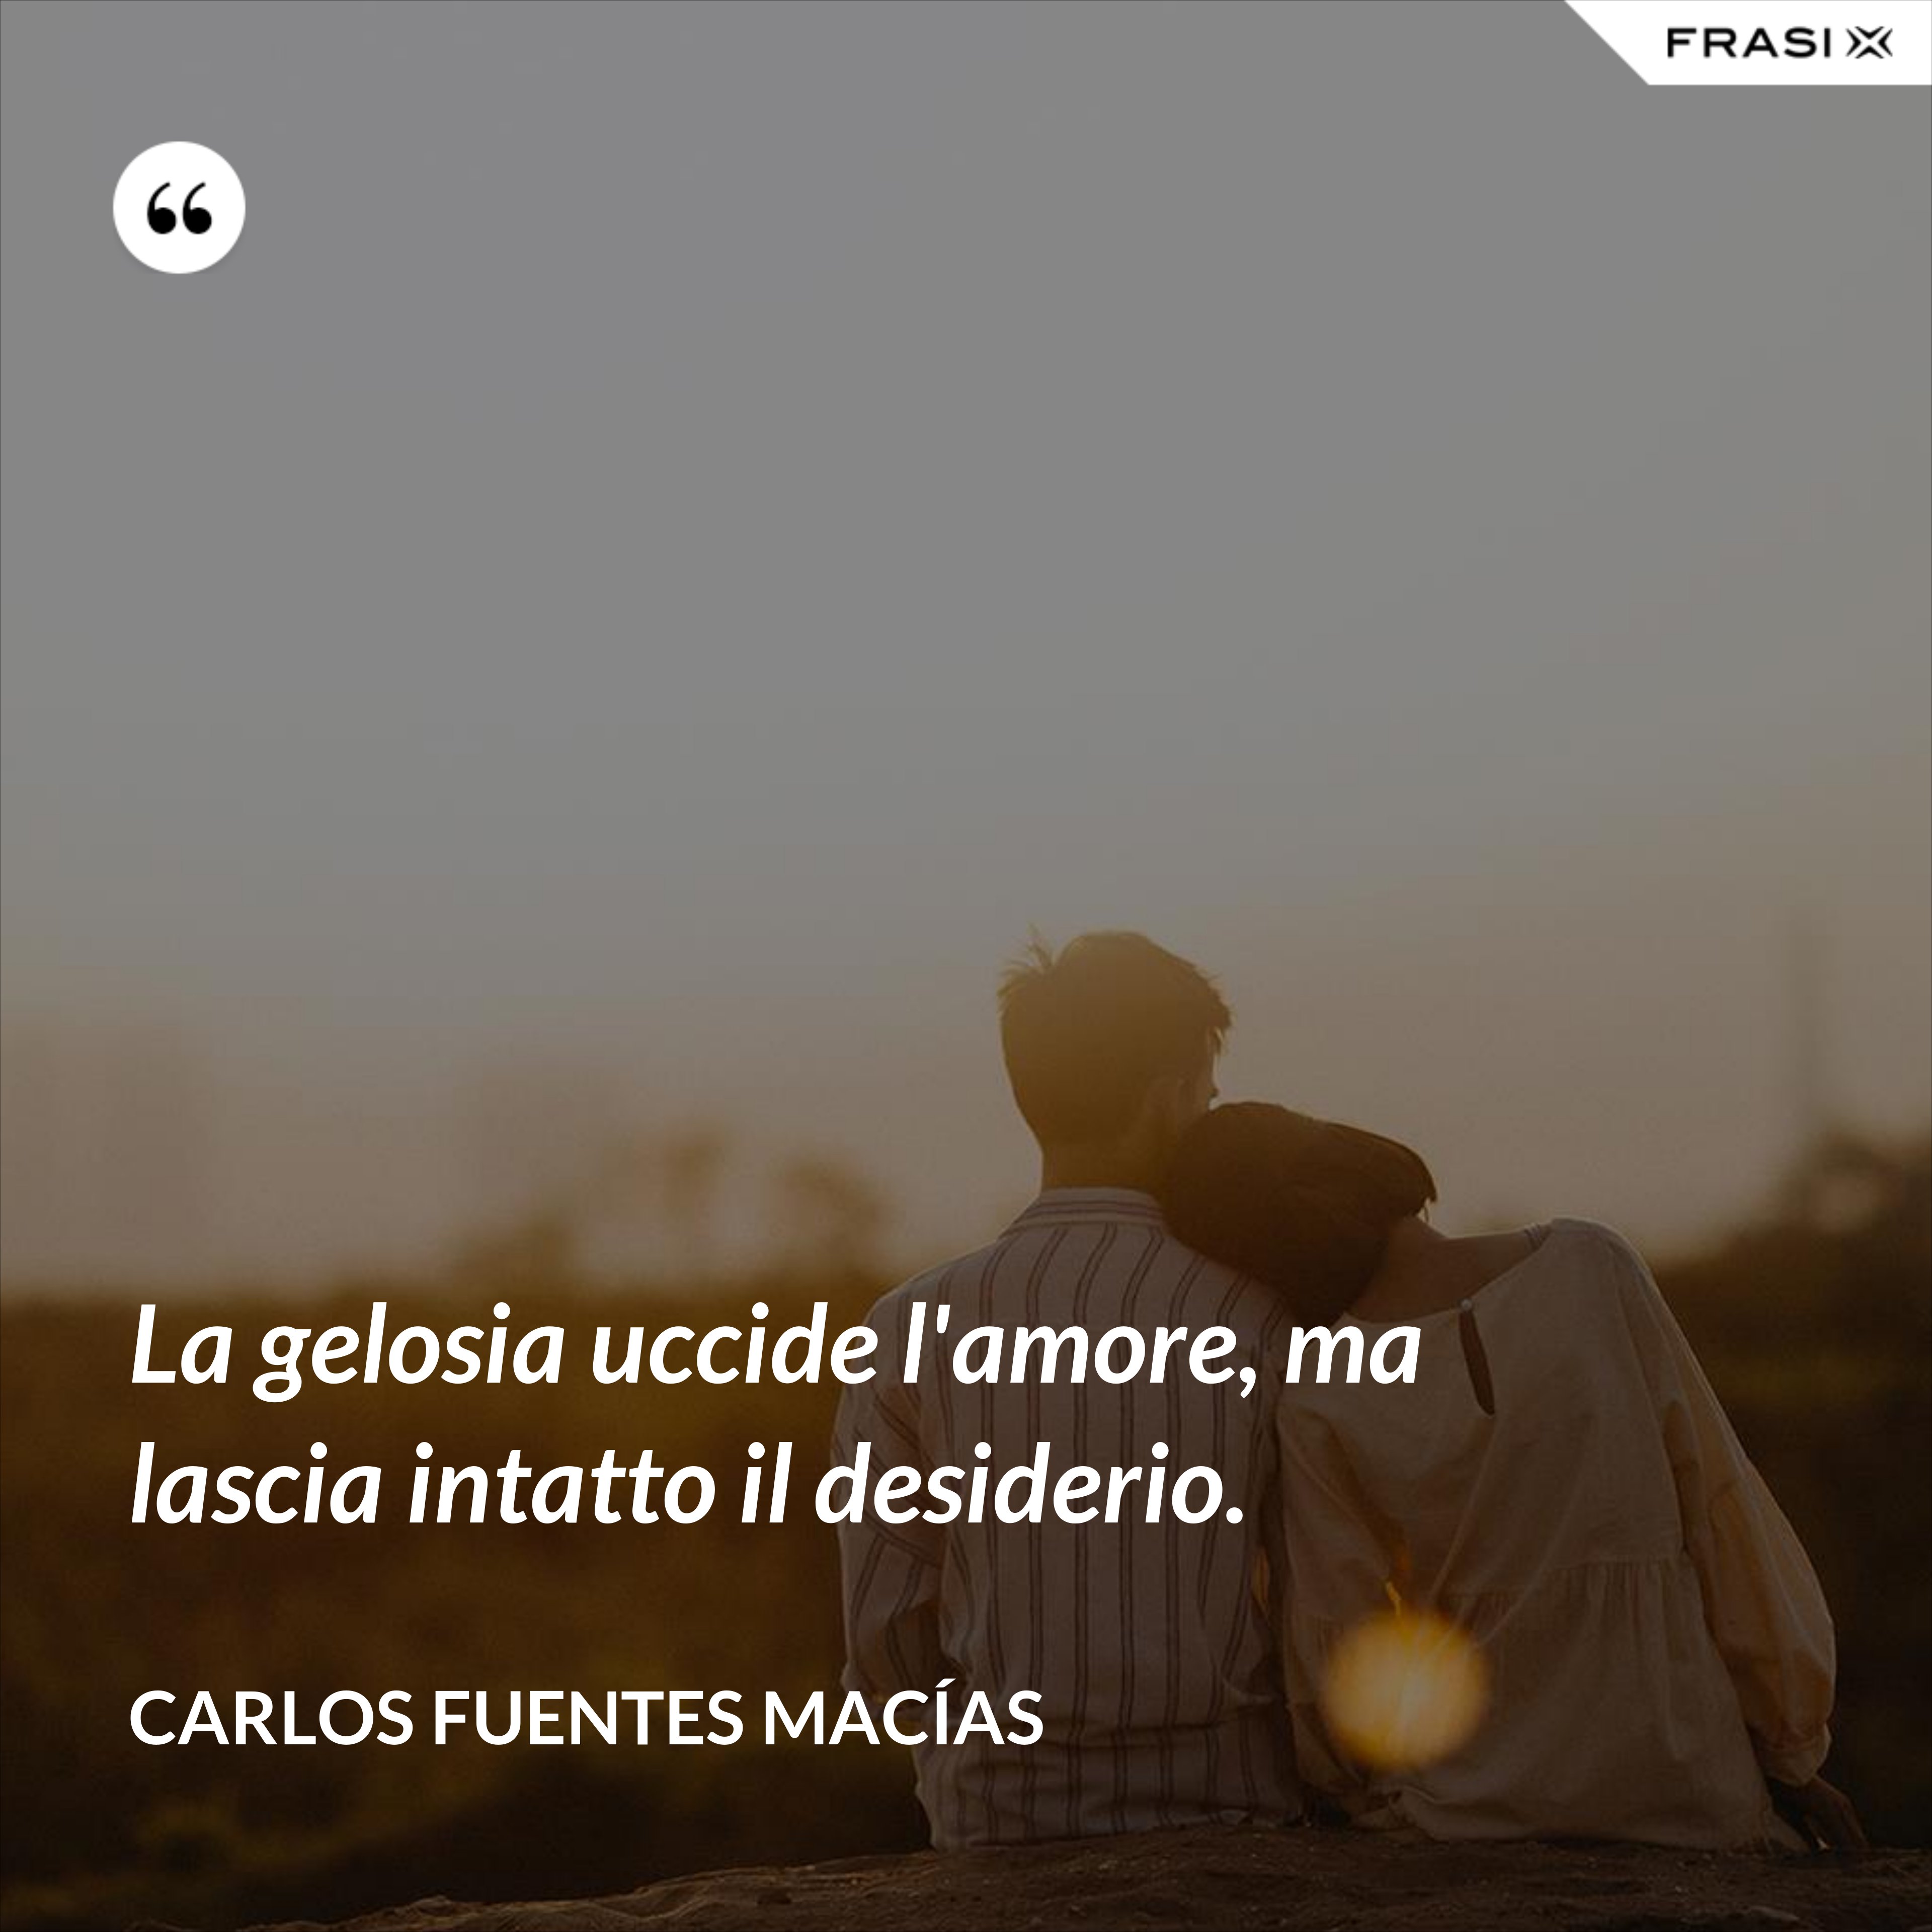 La gelosia uccide l'amore, ma lascia intatto il desiderio. - Carlos Fuentes Macías